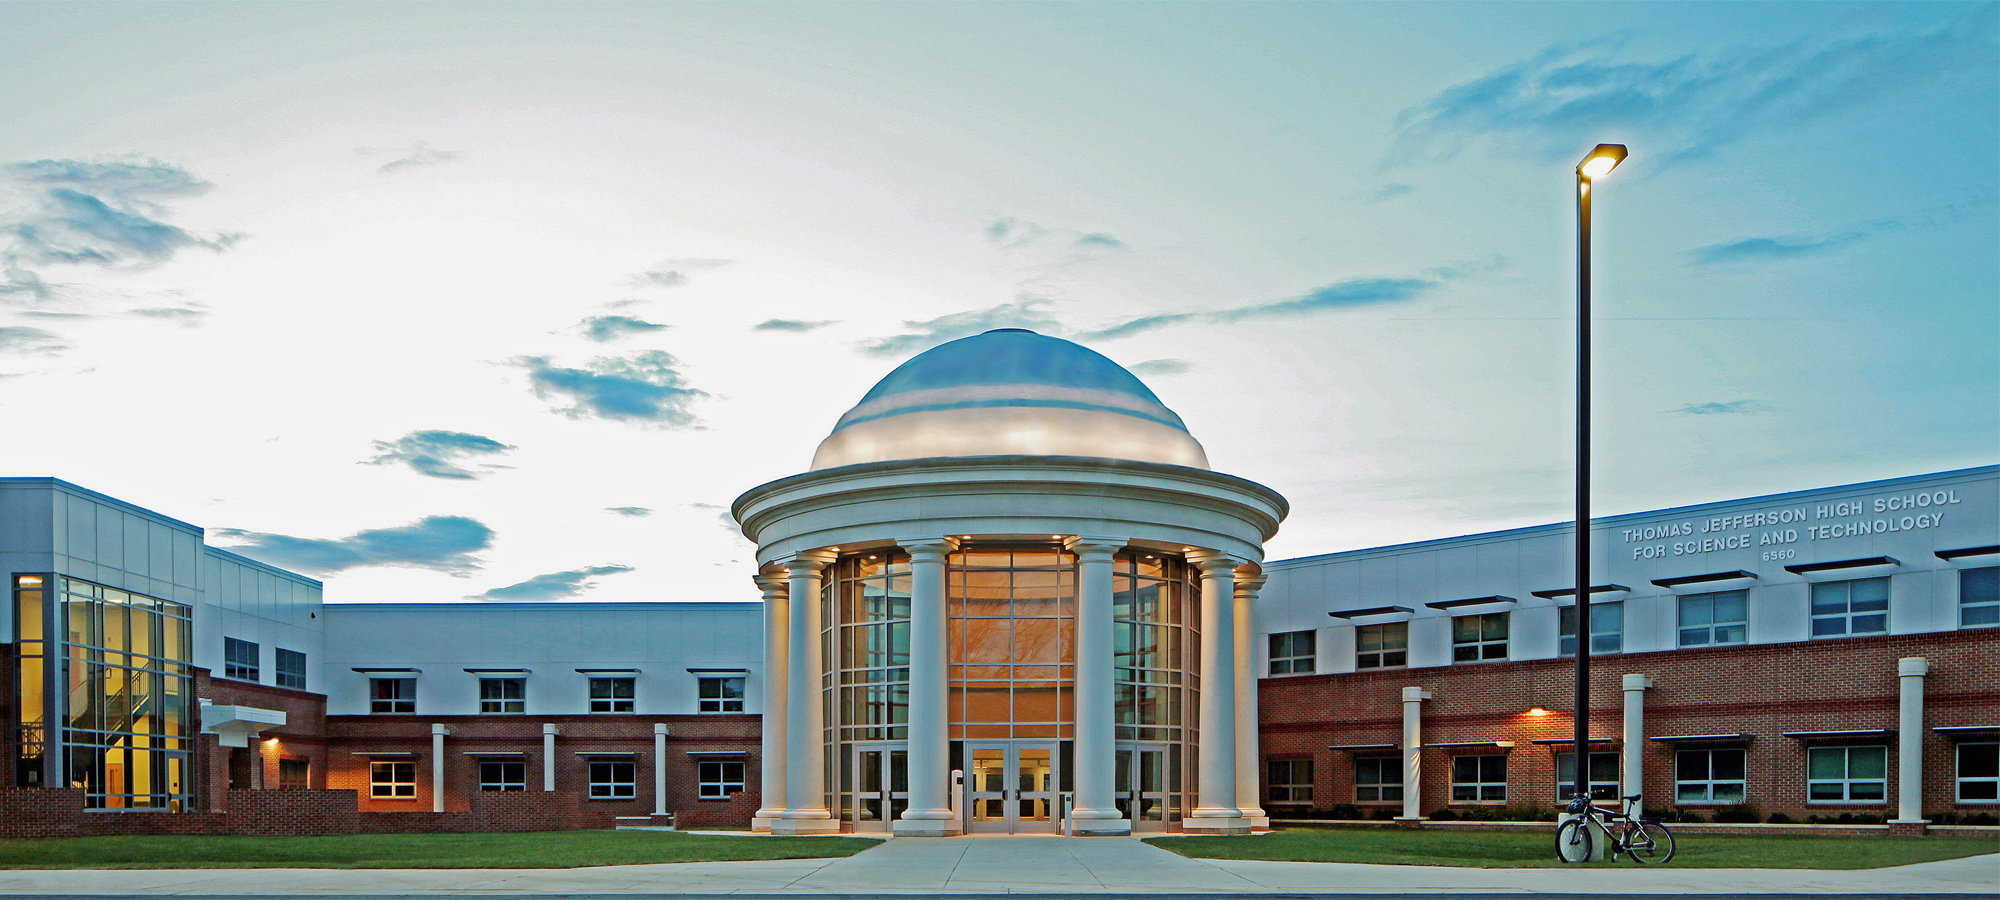 Thomas Jefferson High School for Science and Technology. a ocupado los últimos dos años el primer lugar del ranking de calificaciones en Estados Unidos, considerada la mejor y más influyente escuela del estado.